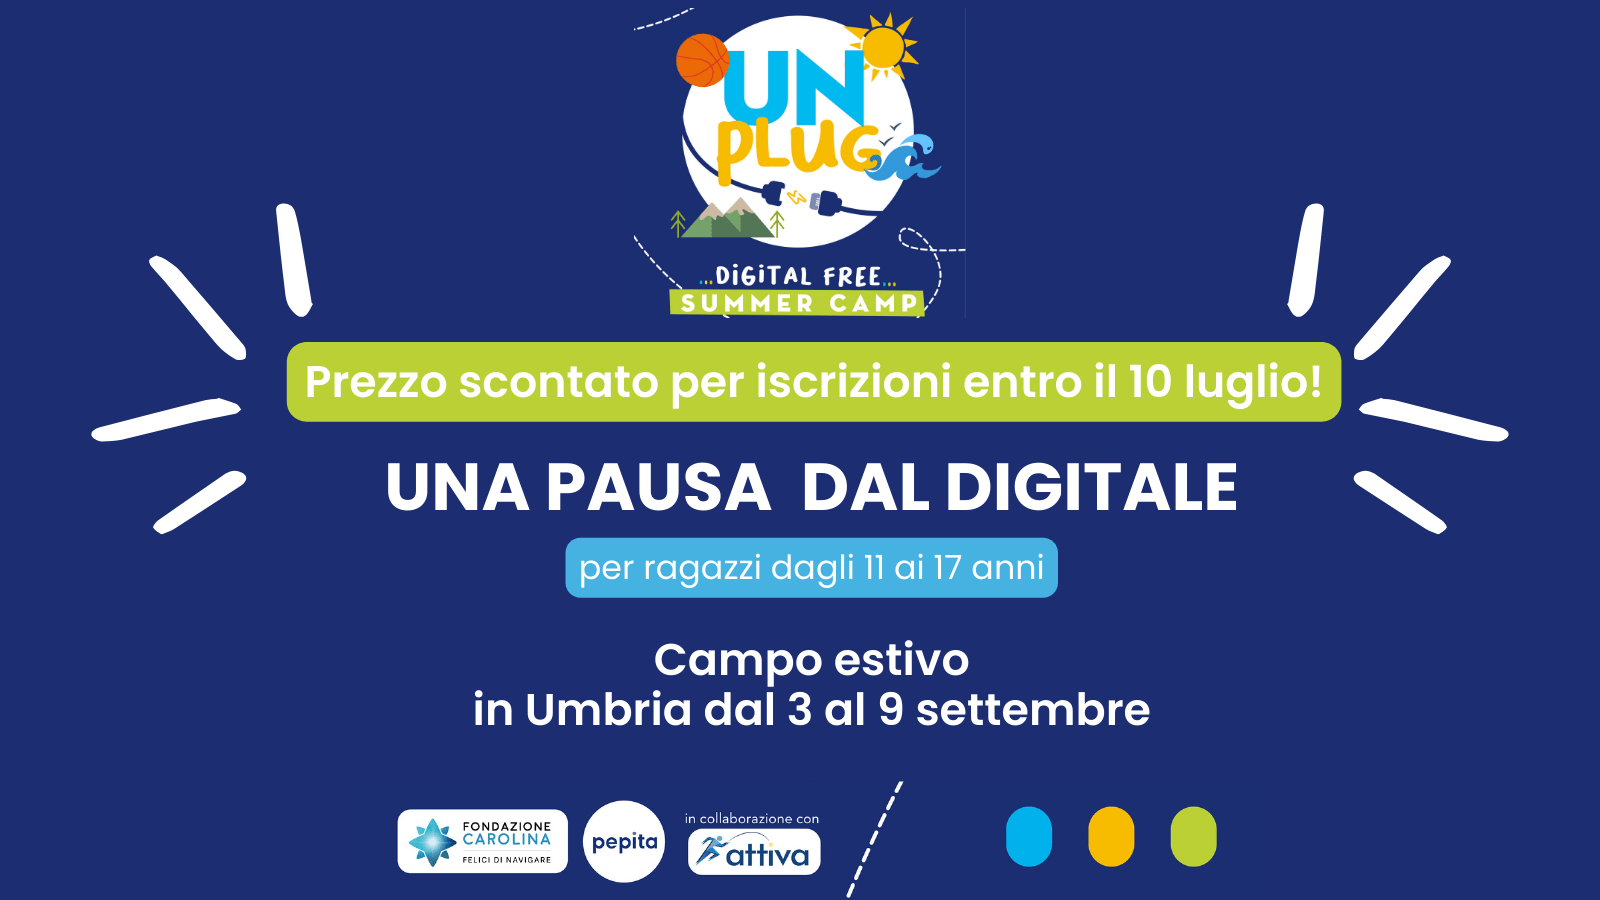 Unplug! Il primo campo estivo digital free in Italia